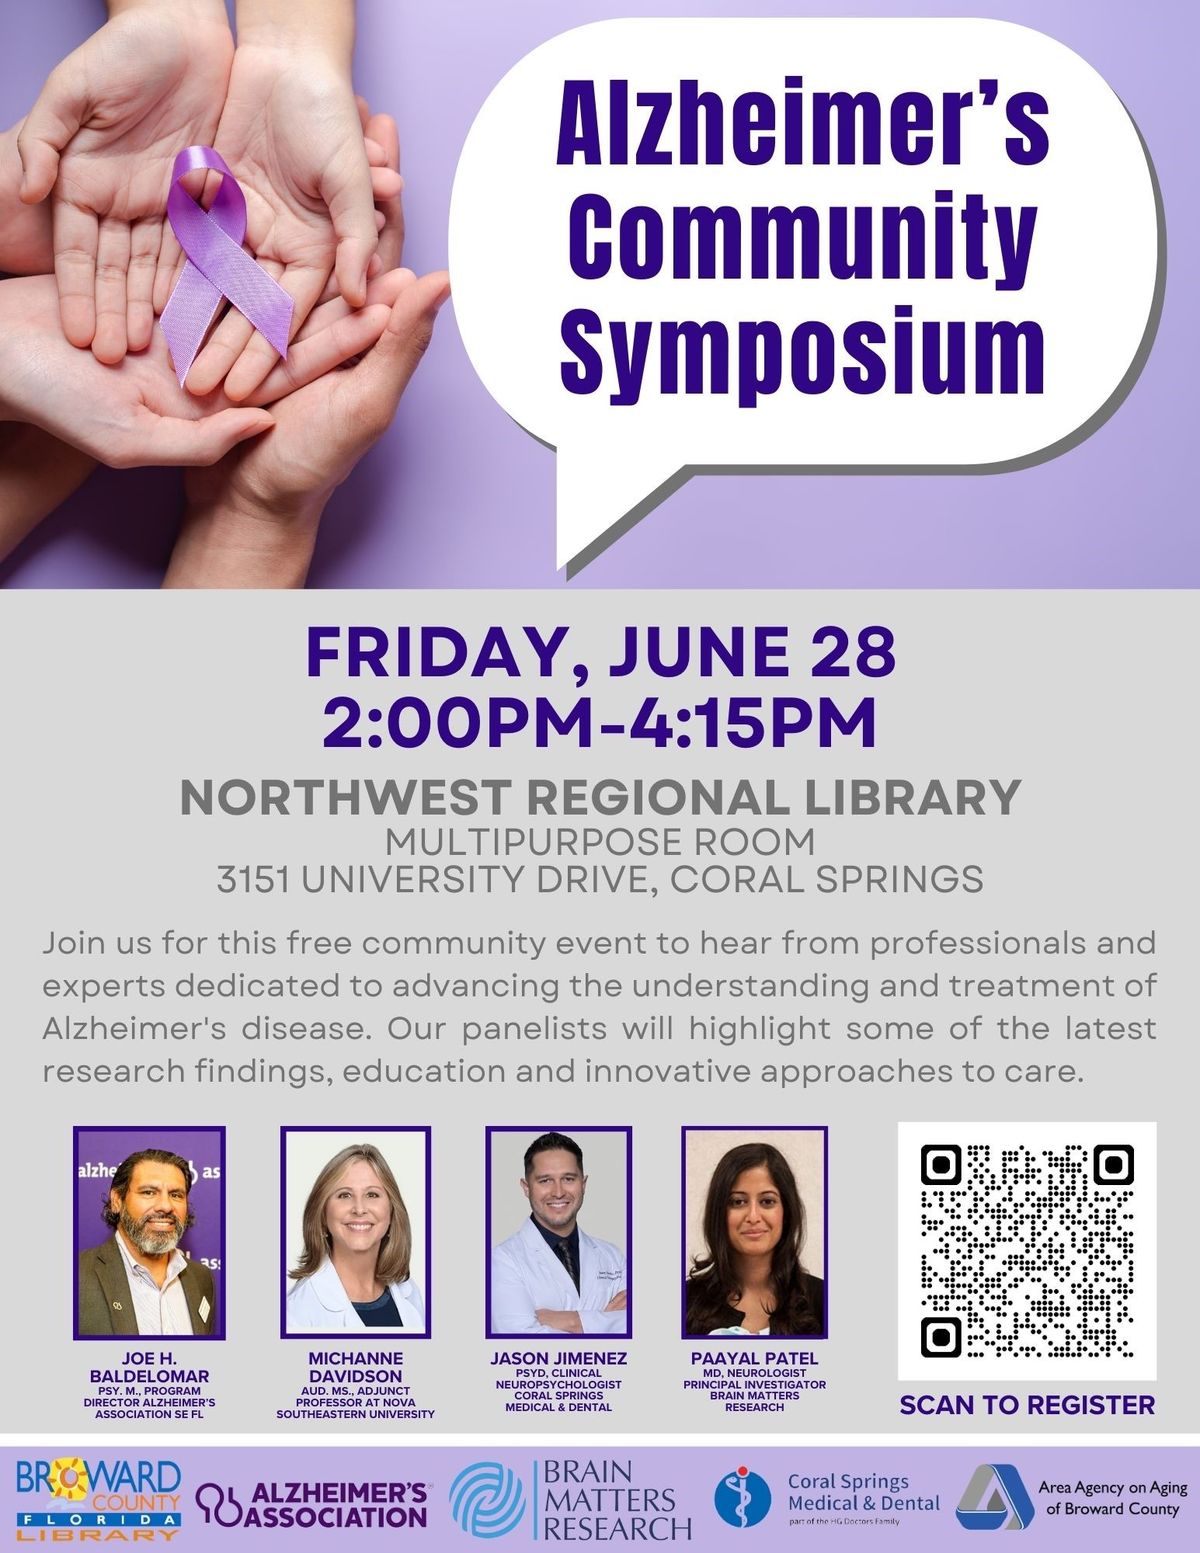 Community Symposium on Alzheimer's